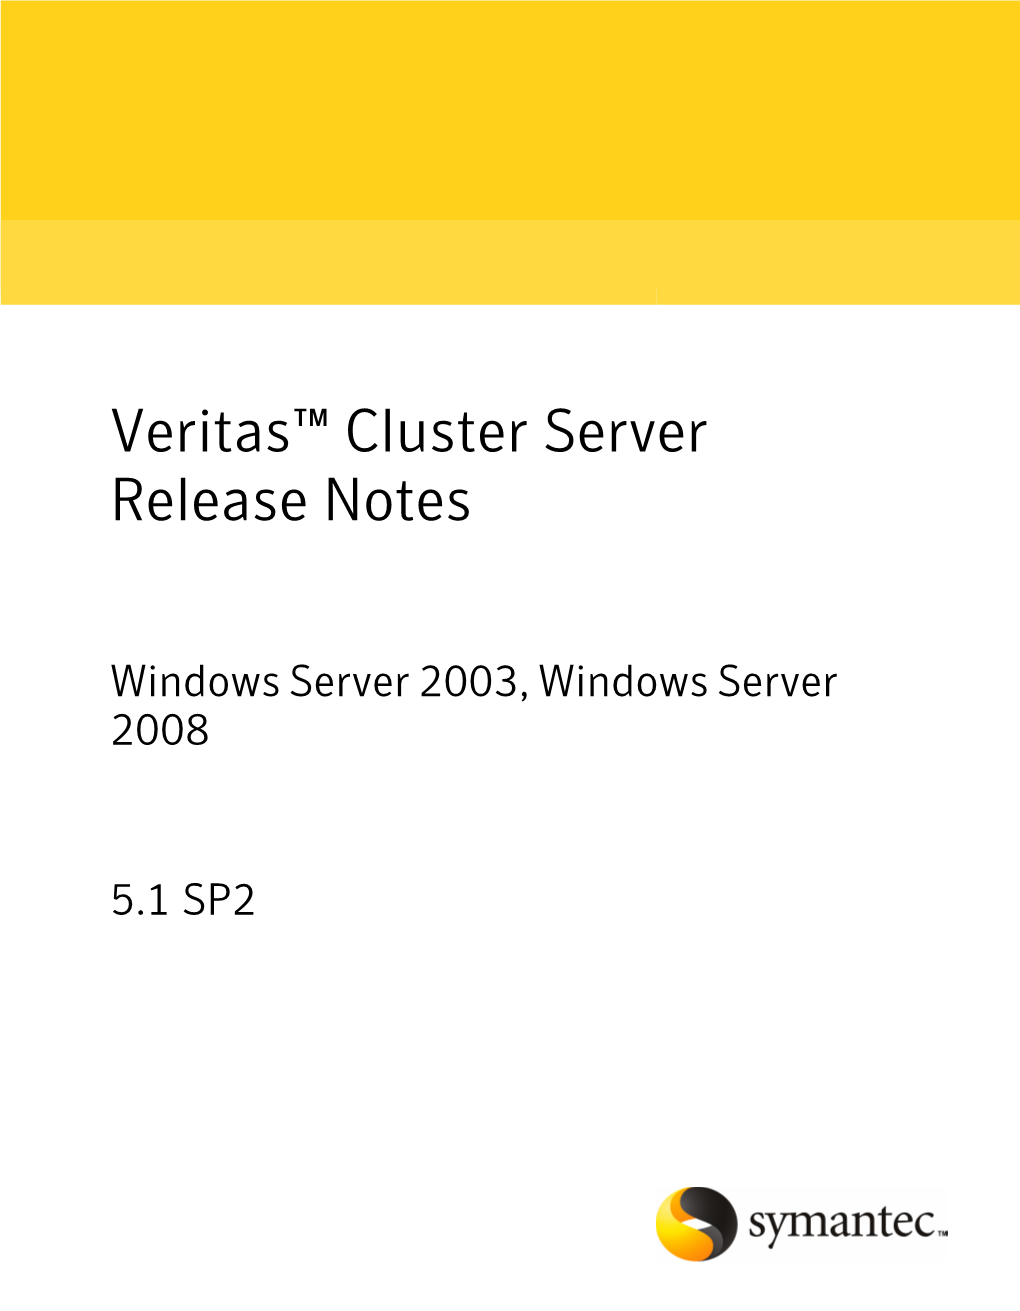 Veritas Cluster Server 5.1SP2 Release Notes